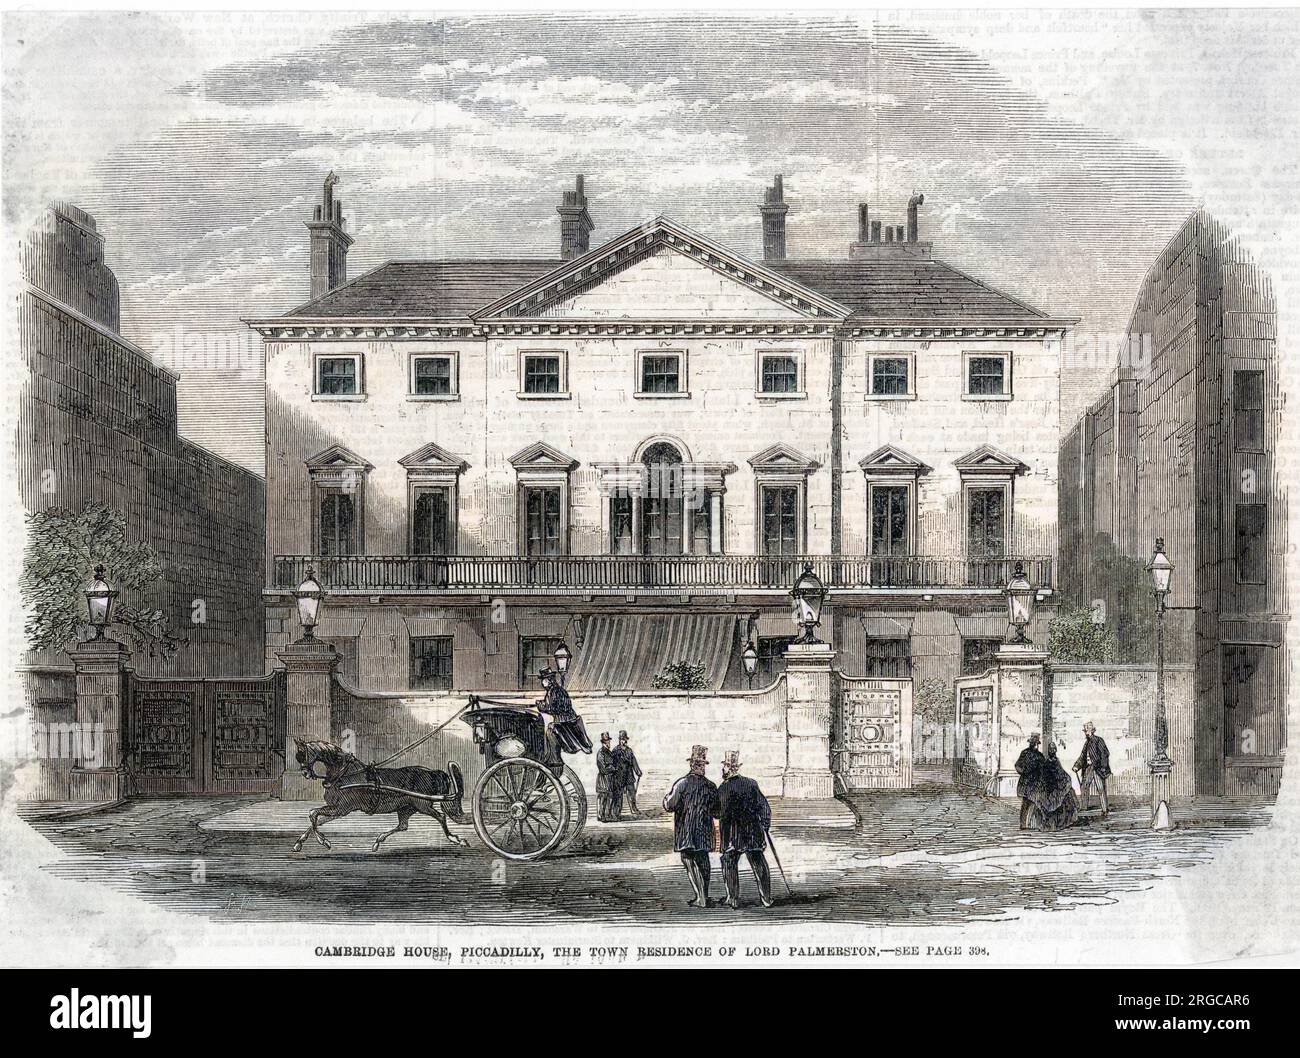 Un taxi hansom oltrepassa Cambridge House, Piccadilly, Londra, la residenza cittadina di Lord Palmerston. Foto Stock